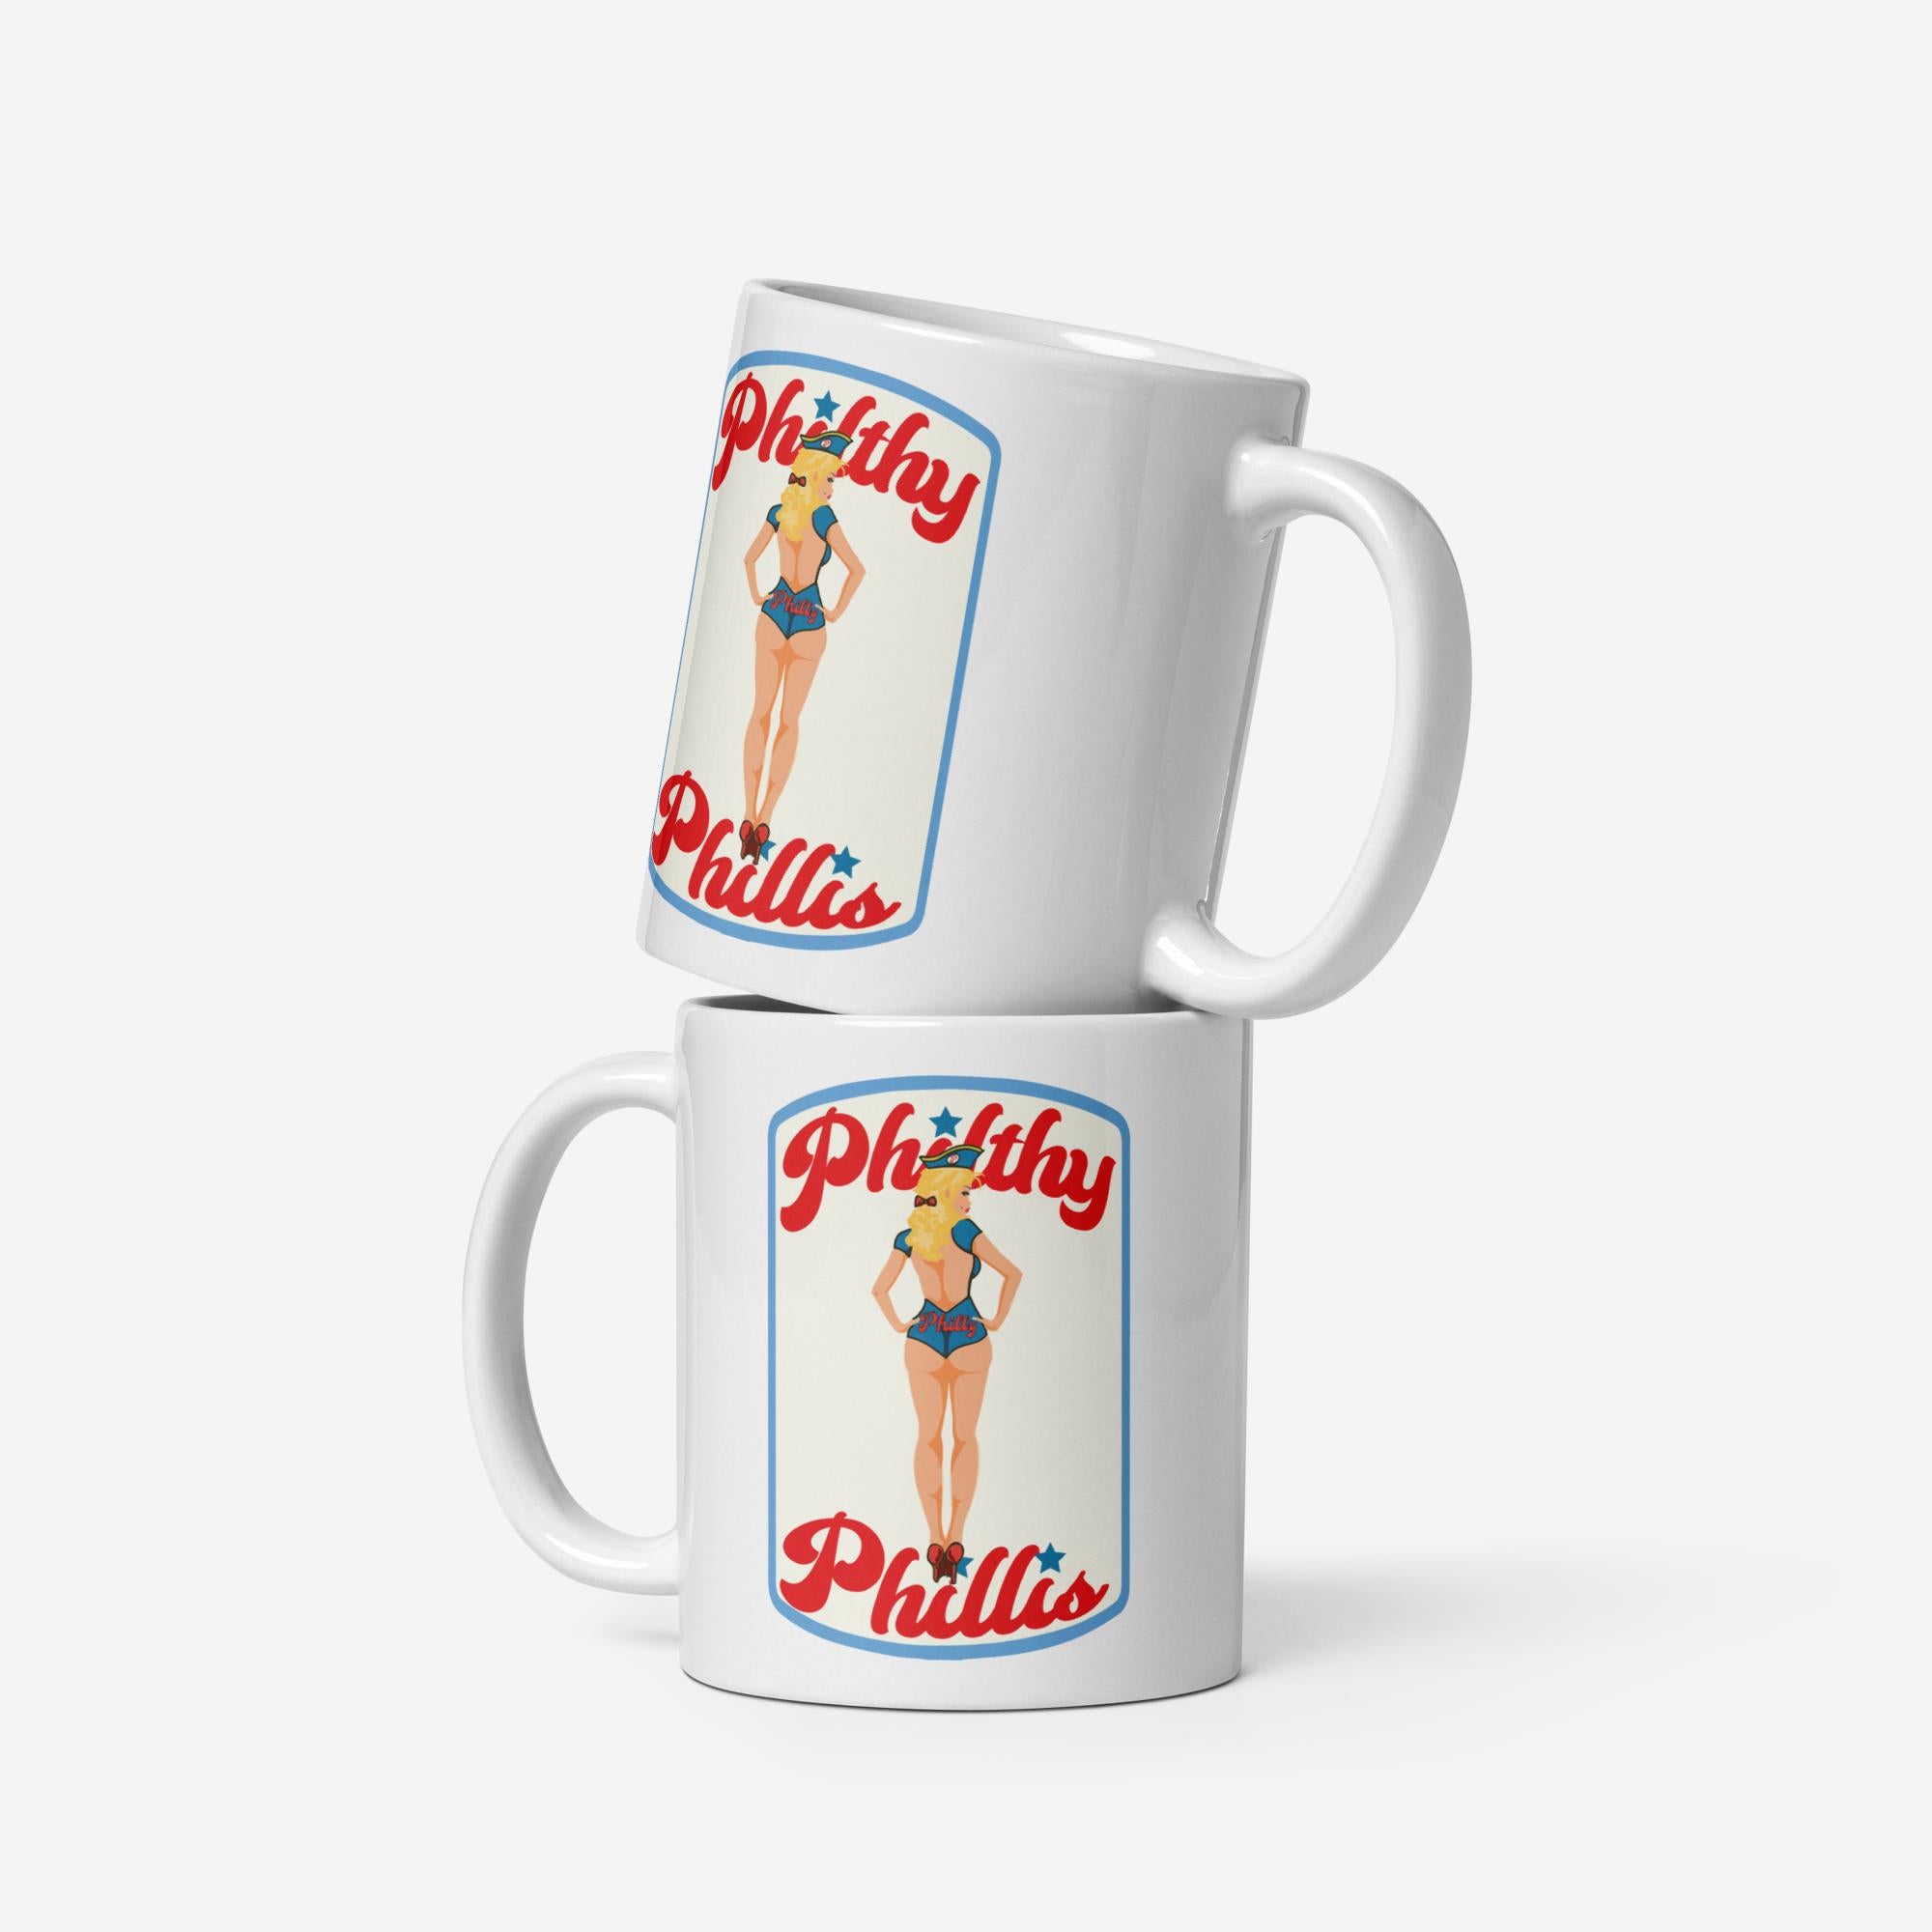 "Philthy Phillis" Mug